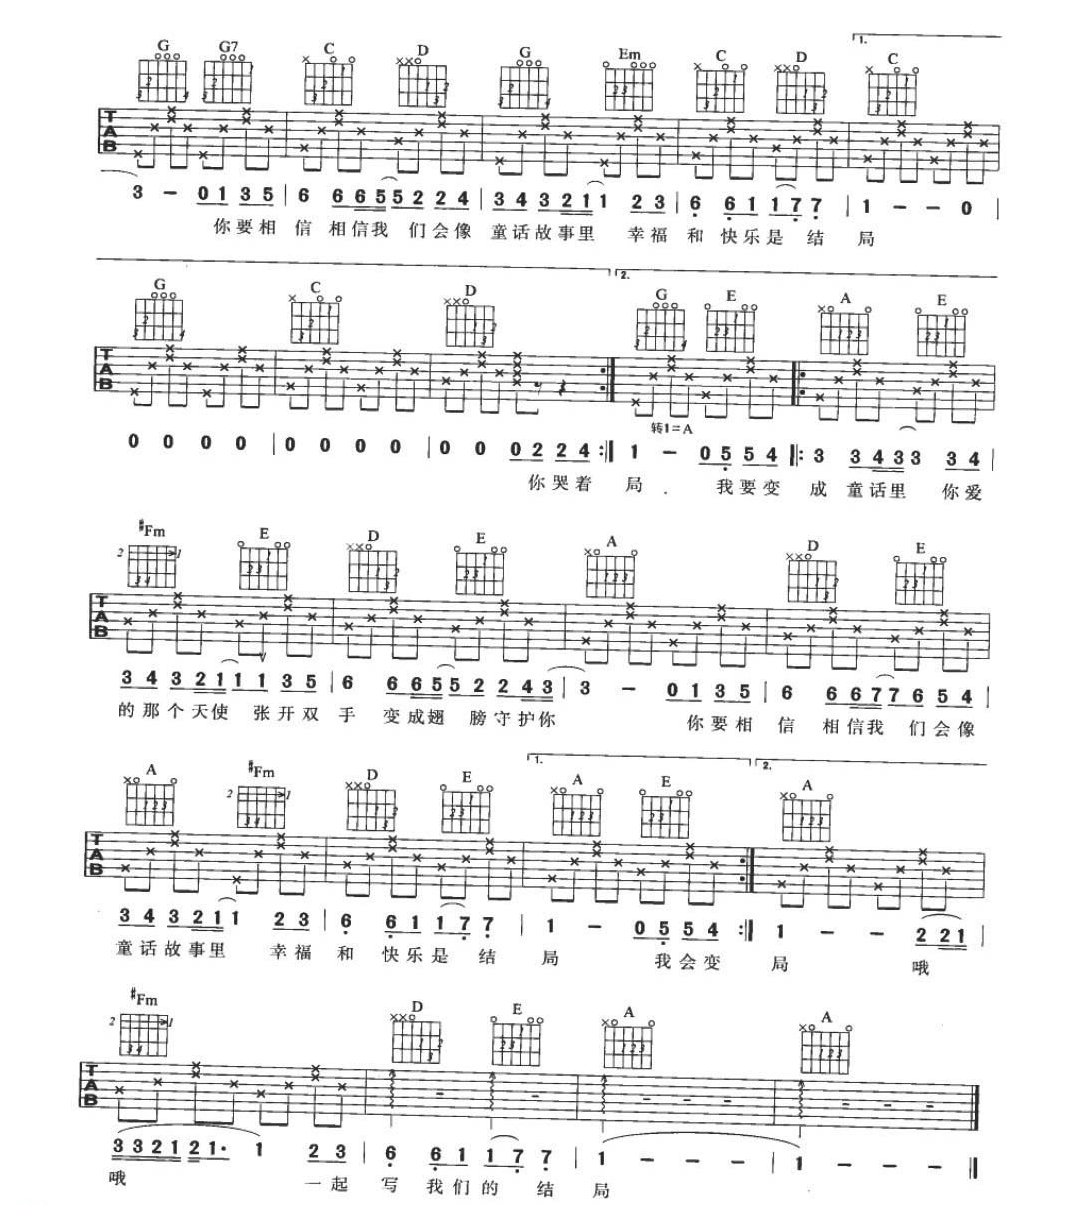 适合吉他初学者弹的歌曲《童话》G大调转A大调/四四拍/分解和弦